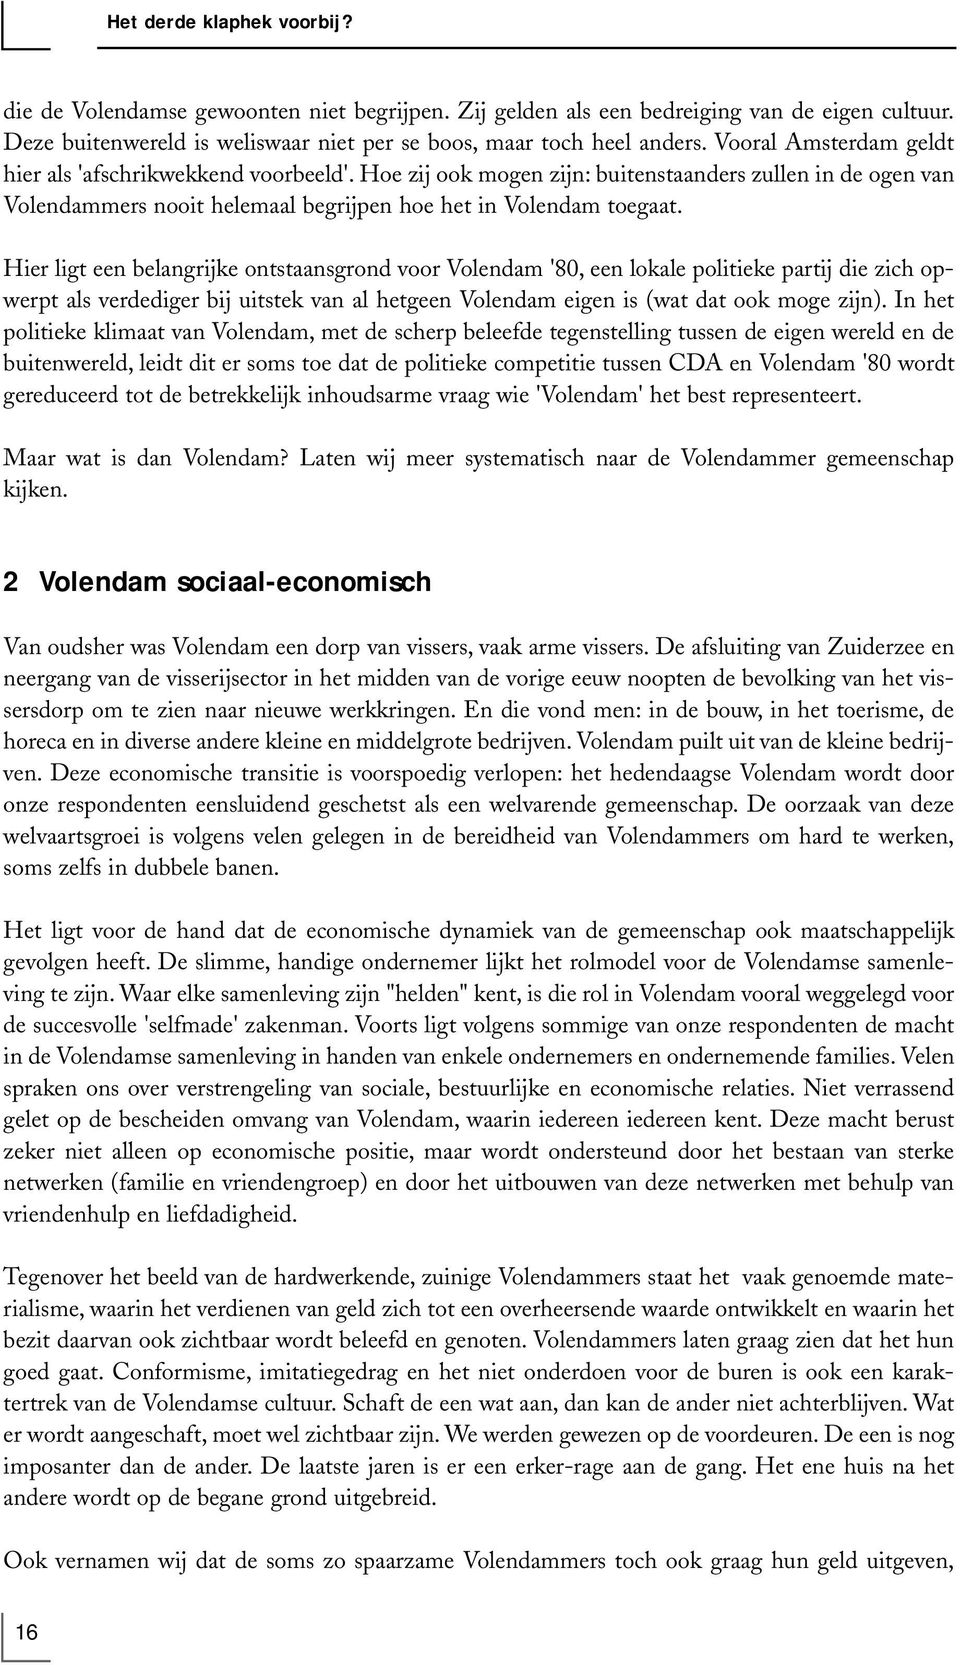 Hier ligt een belangrijke ontstaansgrond voor Volendam '80, een lokale politieke partij die zich opwerpt als verdediger bij uitstek van al hetgeen Volendam eigen is (wat dat ook moge zijn).